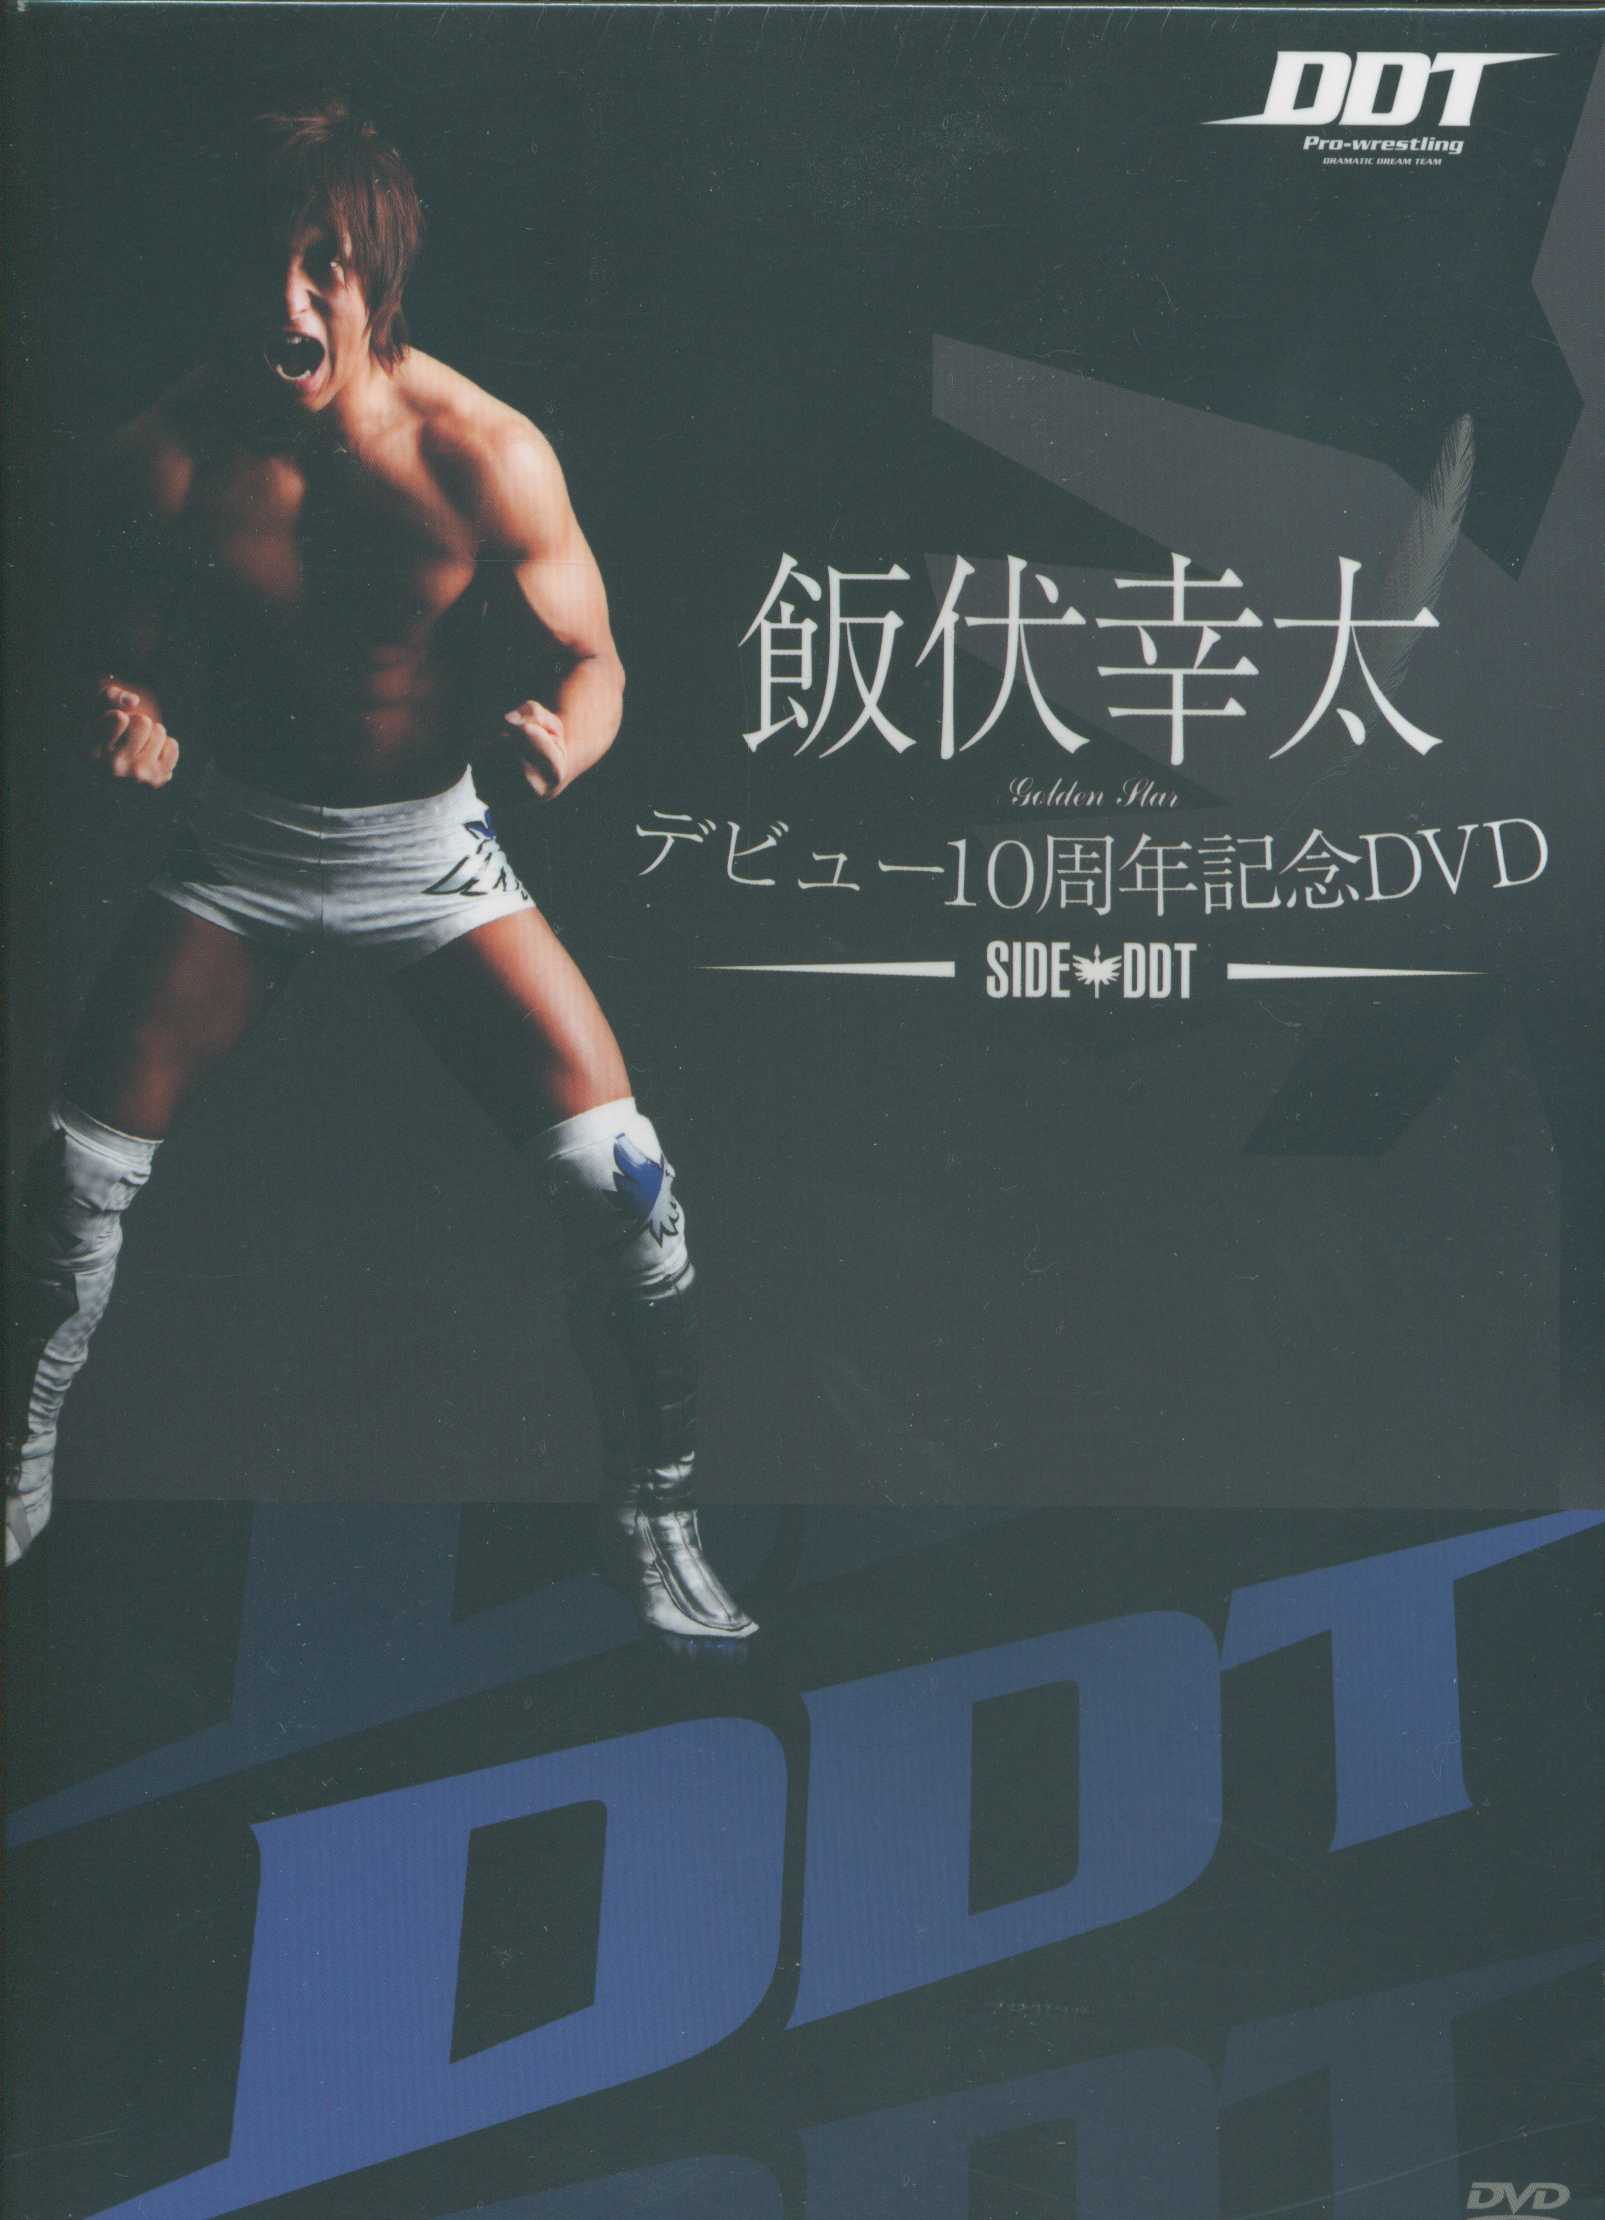 DDT DVD - スポーツ・フィットネス